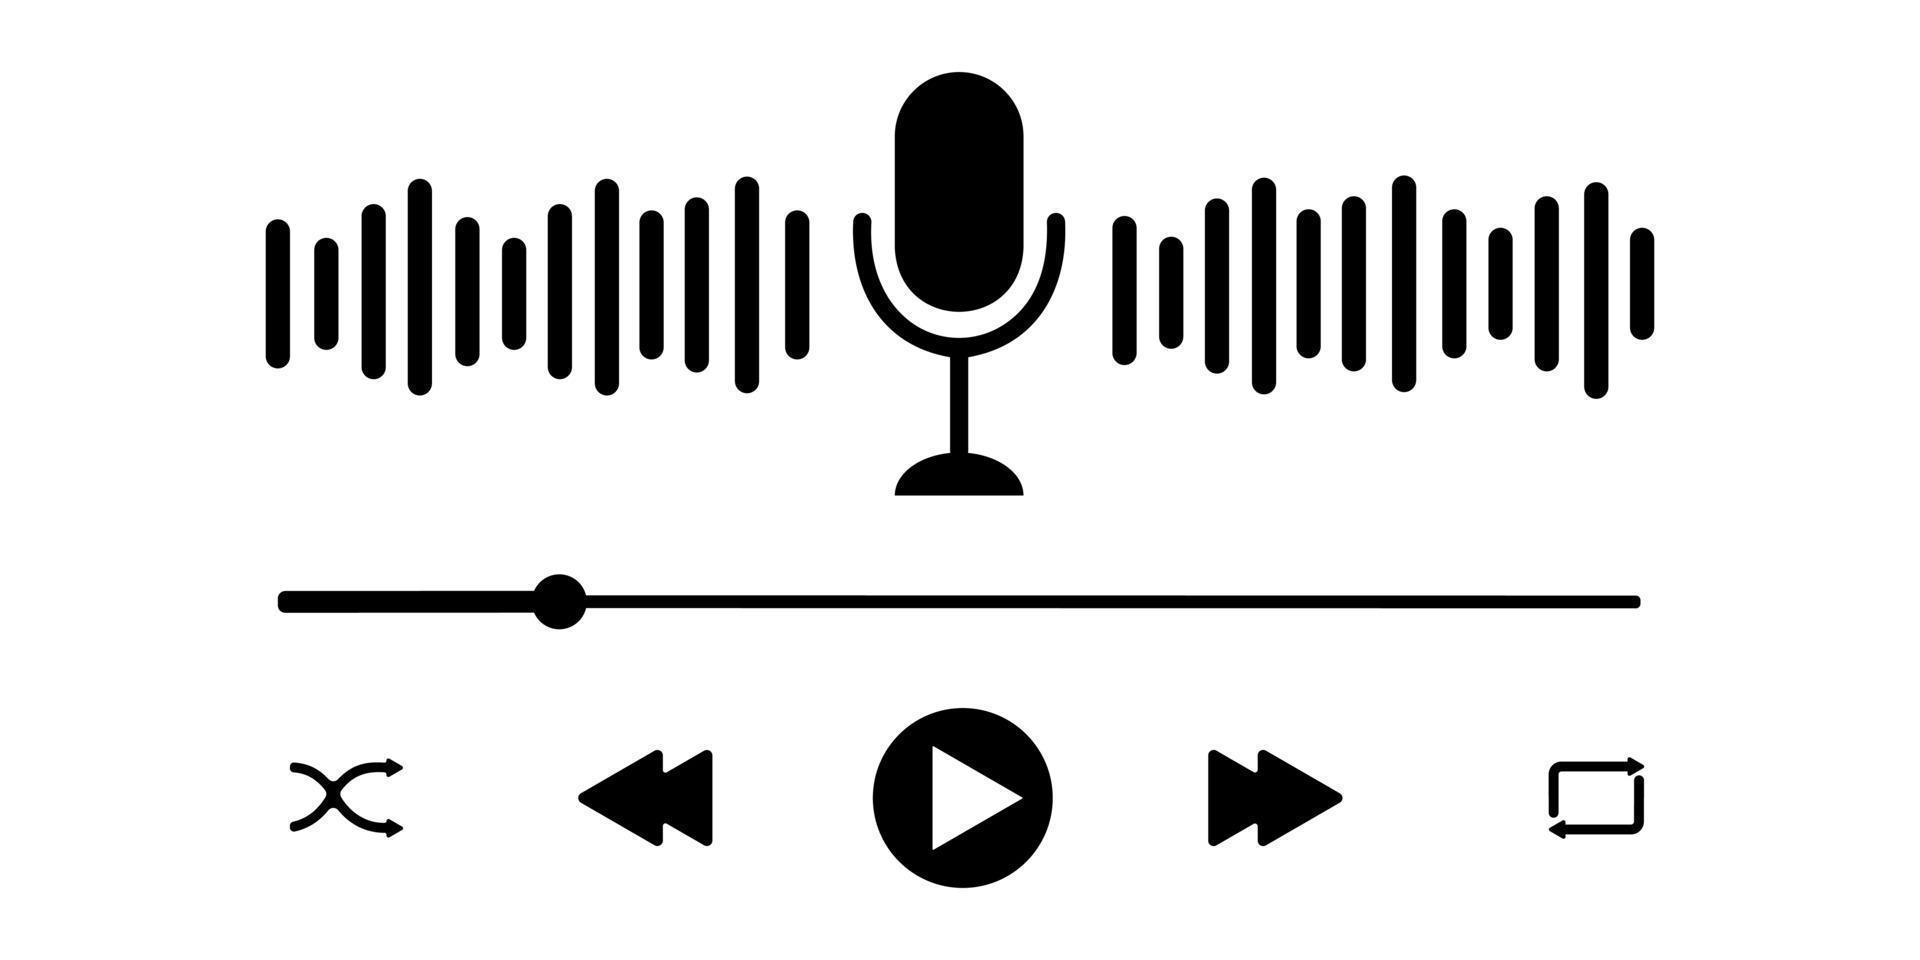 interfaz de reproductor de podcast con micrófono, onda de sonido, barra de progreso de carga y botones. plantilla de panel de reproductor de audio simple para aplicación móvil vector